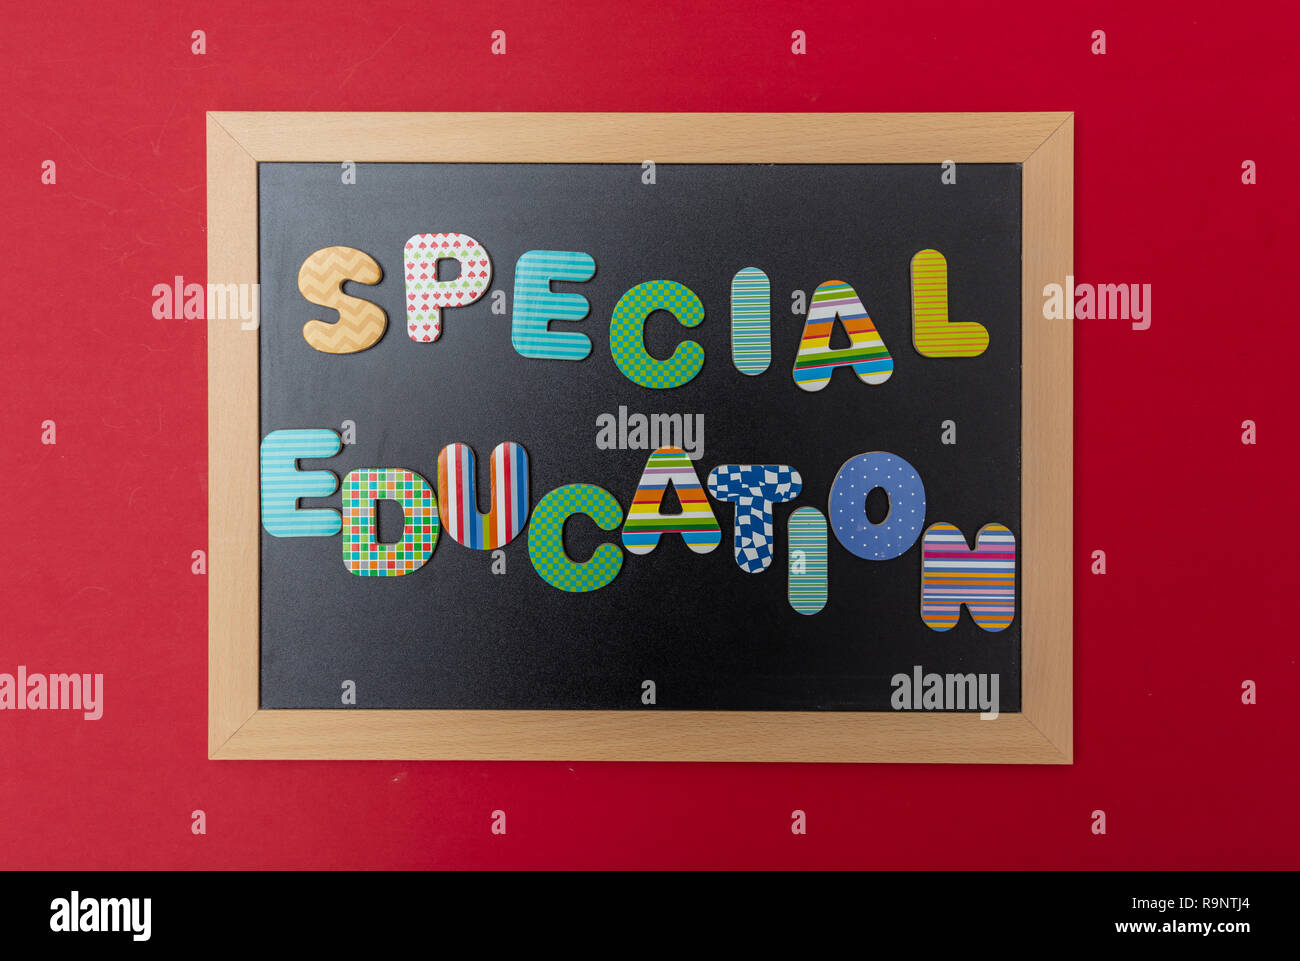 Spezielle Ausbildung Konzept. Schwarze Schiefertafel mit Holzrahmen, Text spezielle Ausbildung in bunten Buchstaben, rote Wand Hintergrund Stockfoto